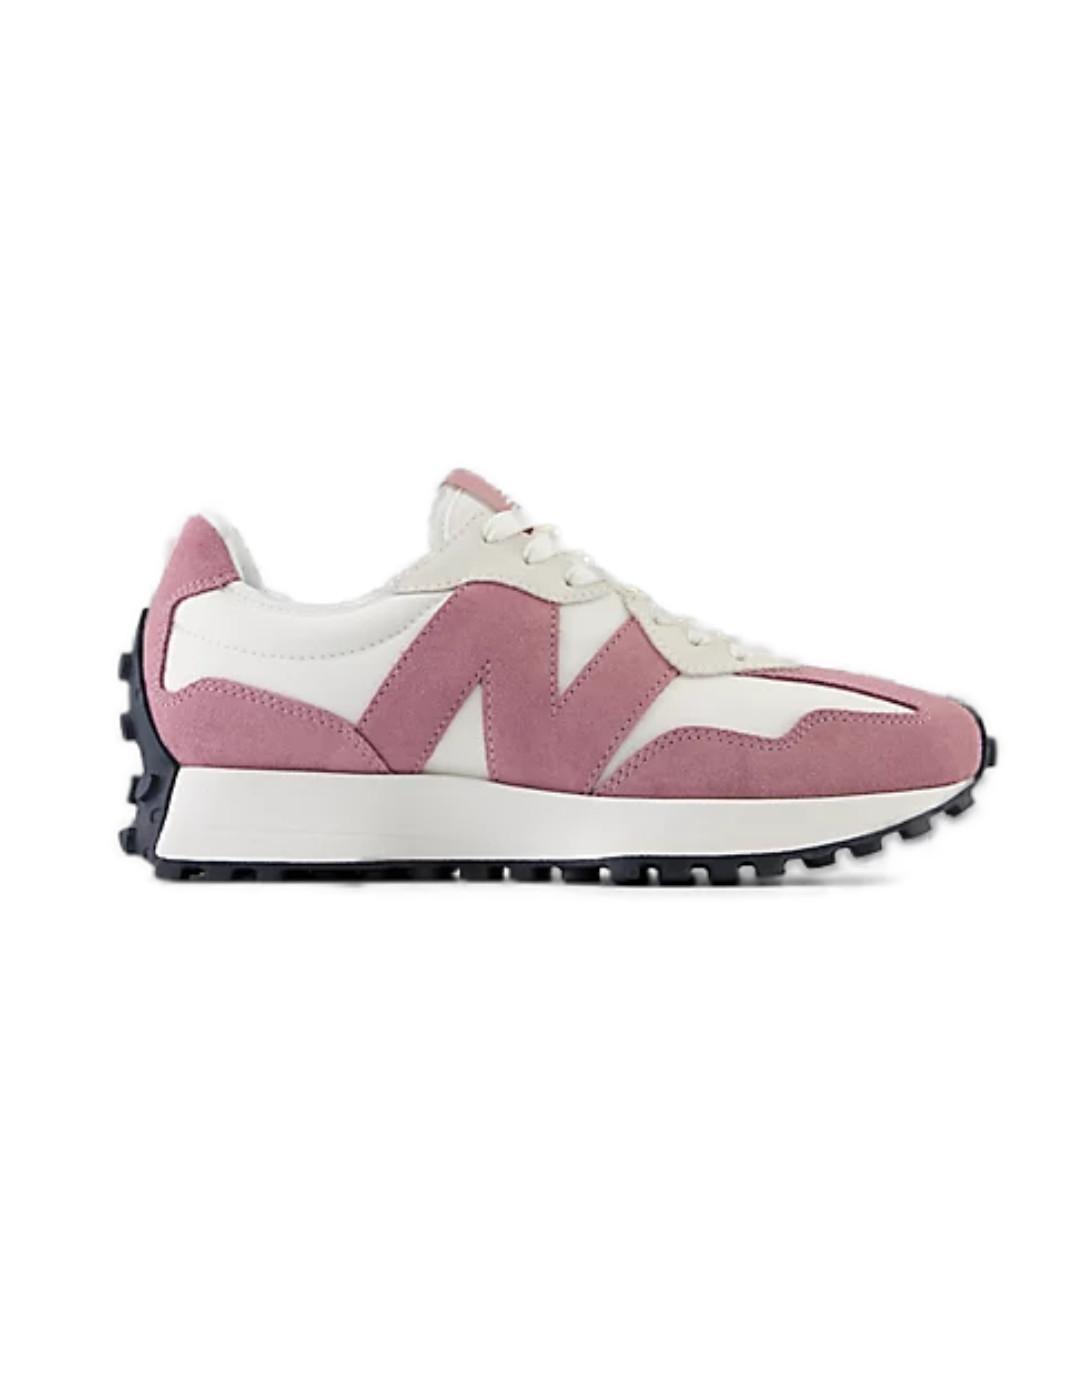 Zapatillas New Balance WS327MB rosa y blanco para mujer